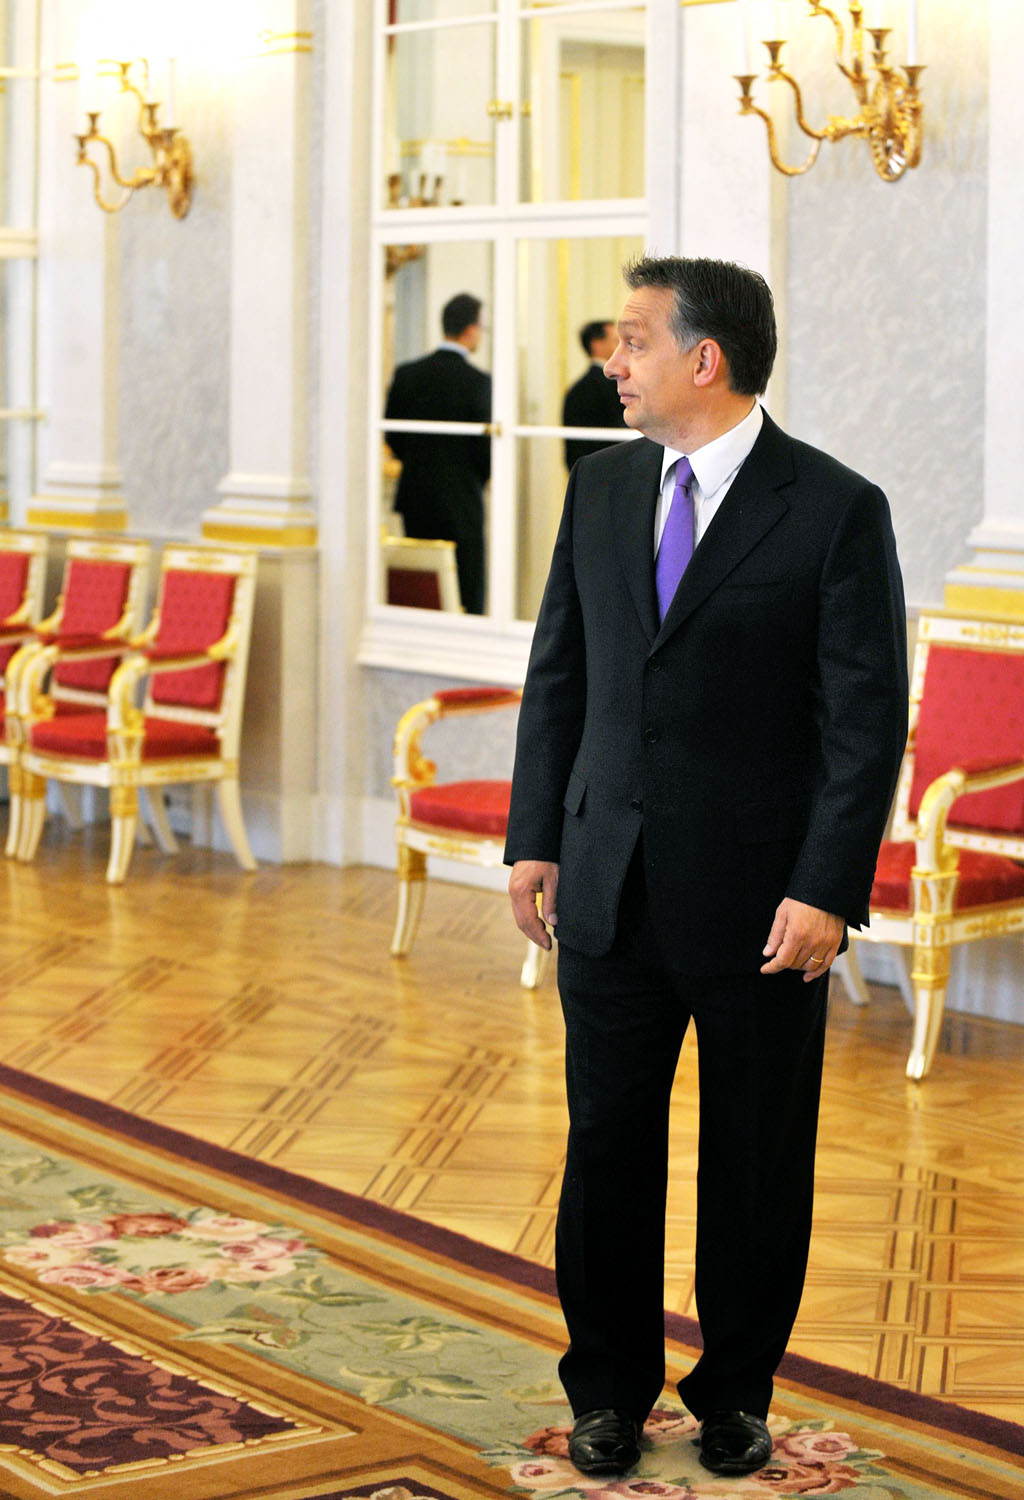 Az apparátus nagy munkában: 2016. március 15-én a Sándor-palota szomszédságába költözik Orbán Viktor